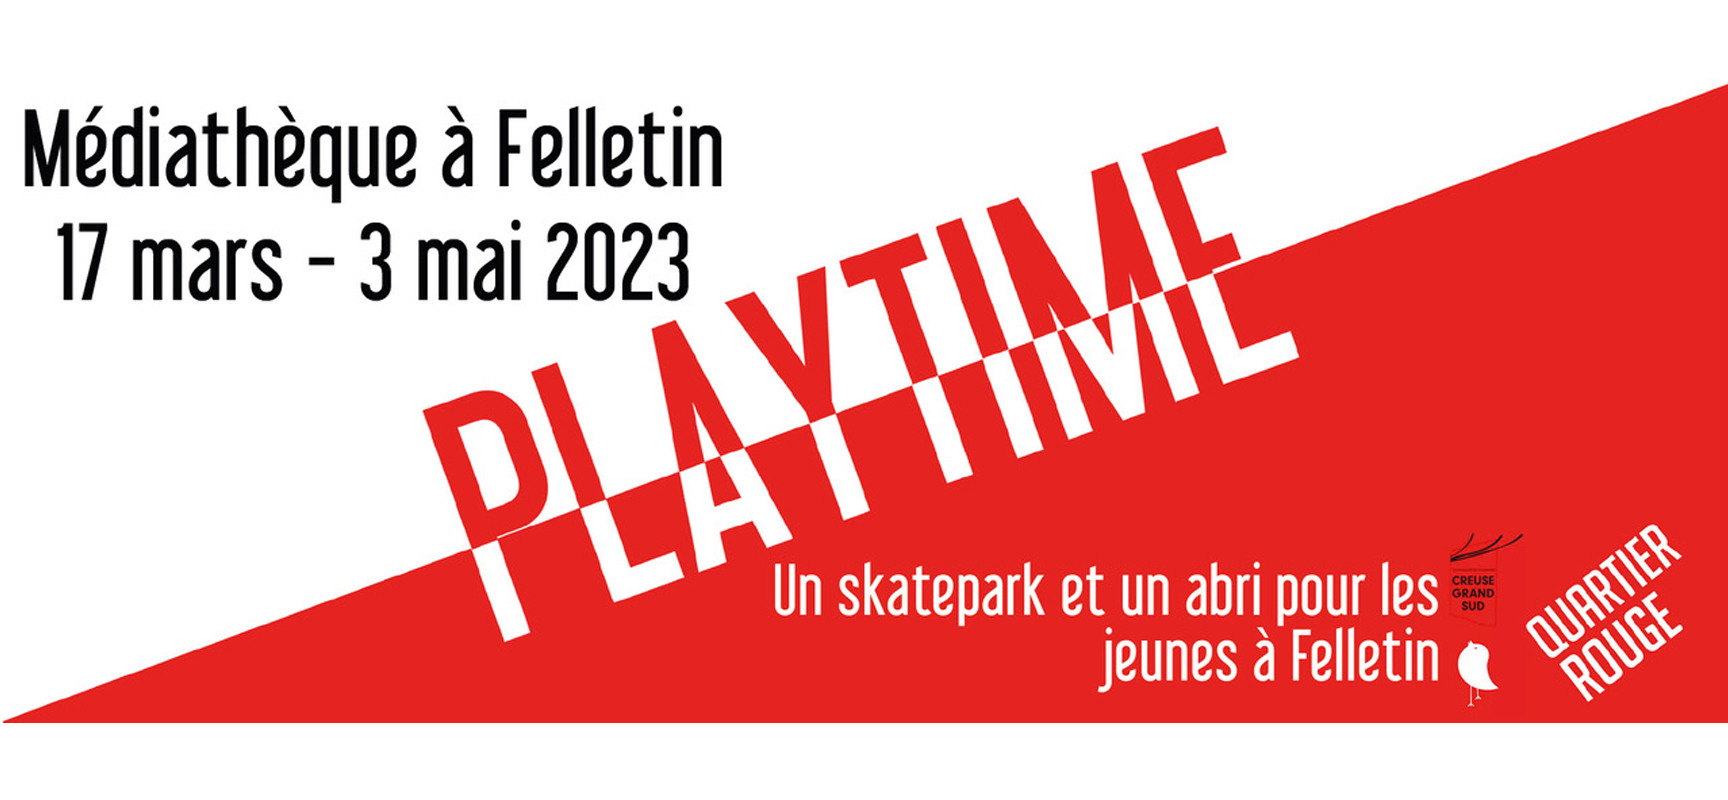 [Médiathèque] Exposition – PlayTime, un skatepark et un abri pour les jeunes à Felletin – Felletin – du 17 mars au 3 mai 2023